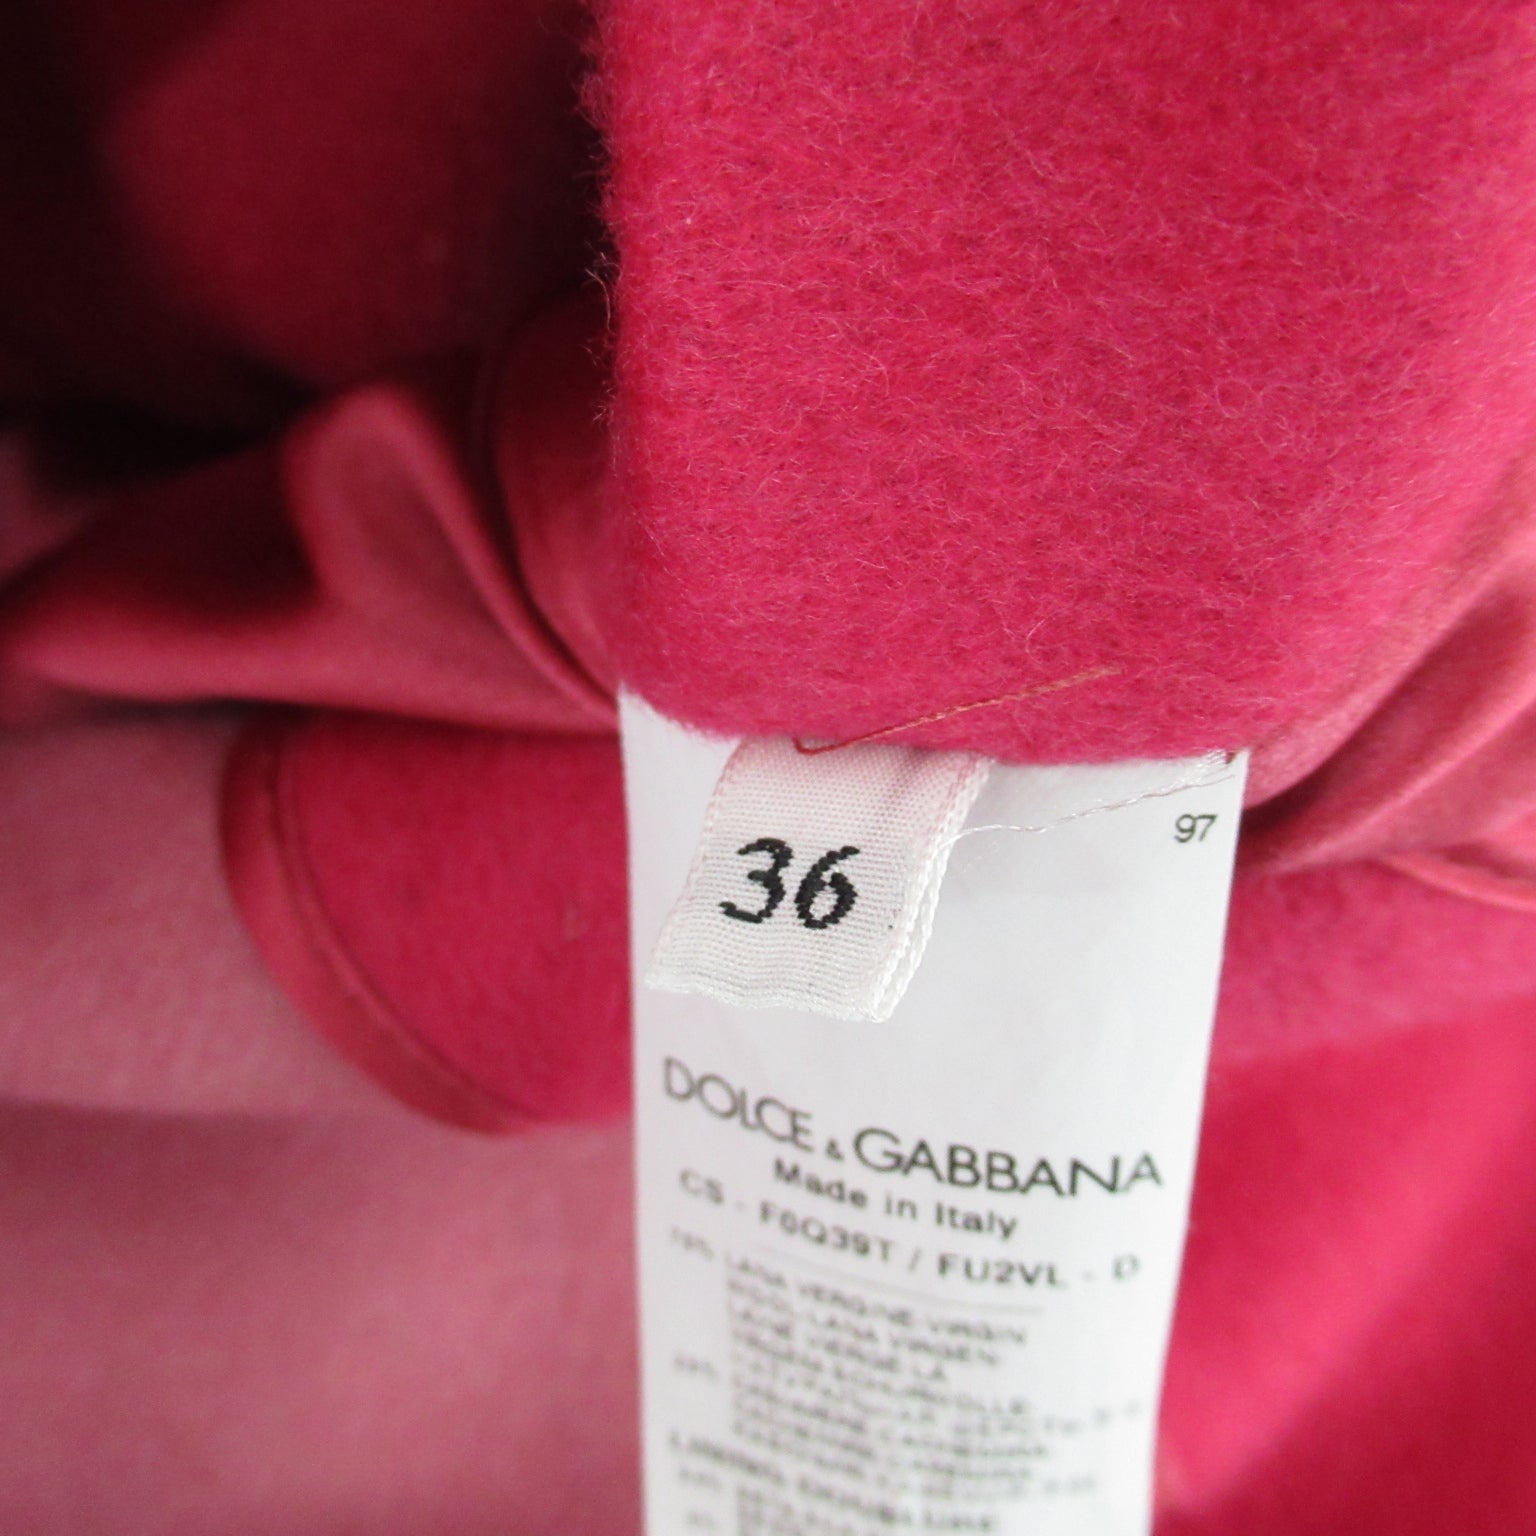 Dolce &amp; Gabbana Double Bracelet   Cashmere  Pink CS-F0Q39T